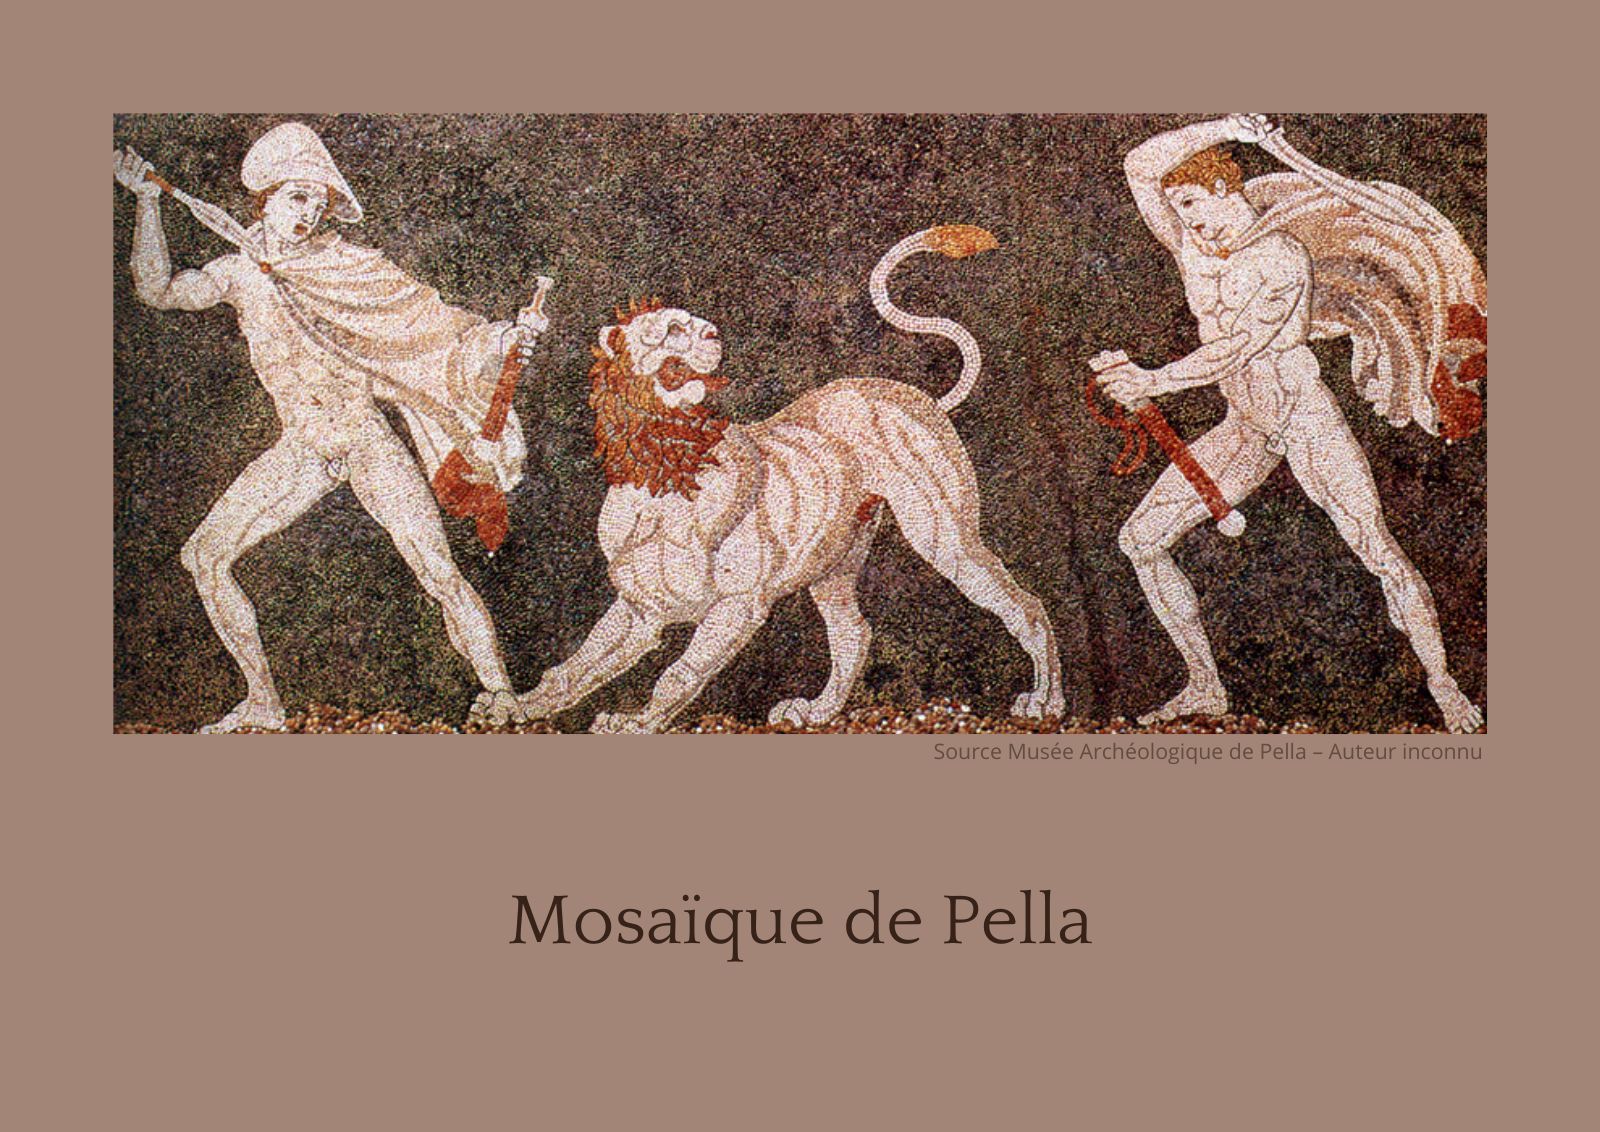 La timeline de la mosaïque, une grande histoire – Mosaïqu'ella